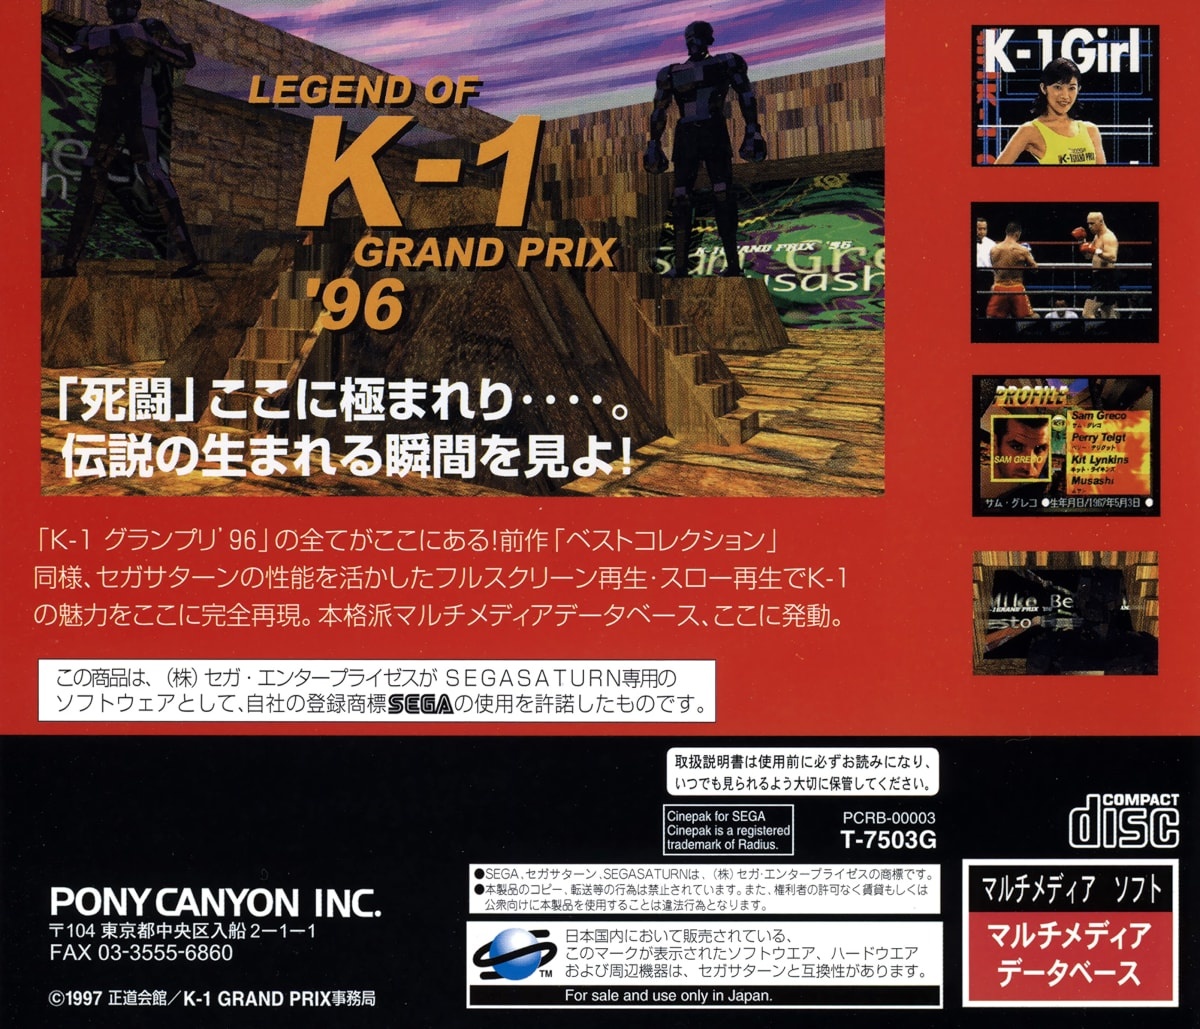 Capa do jogo Legend of K-1 Grand Prix 96